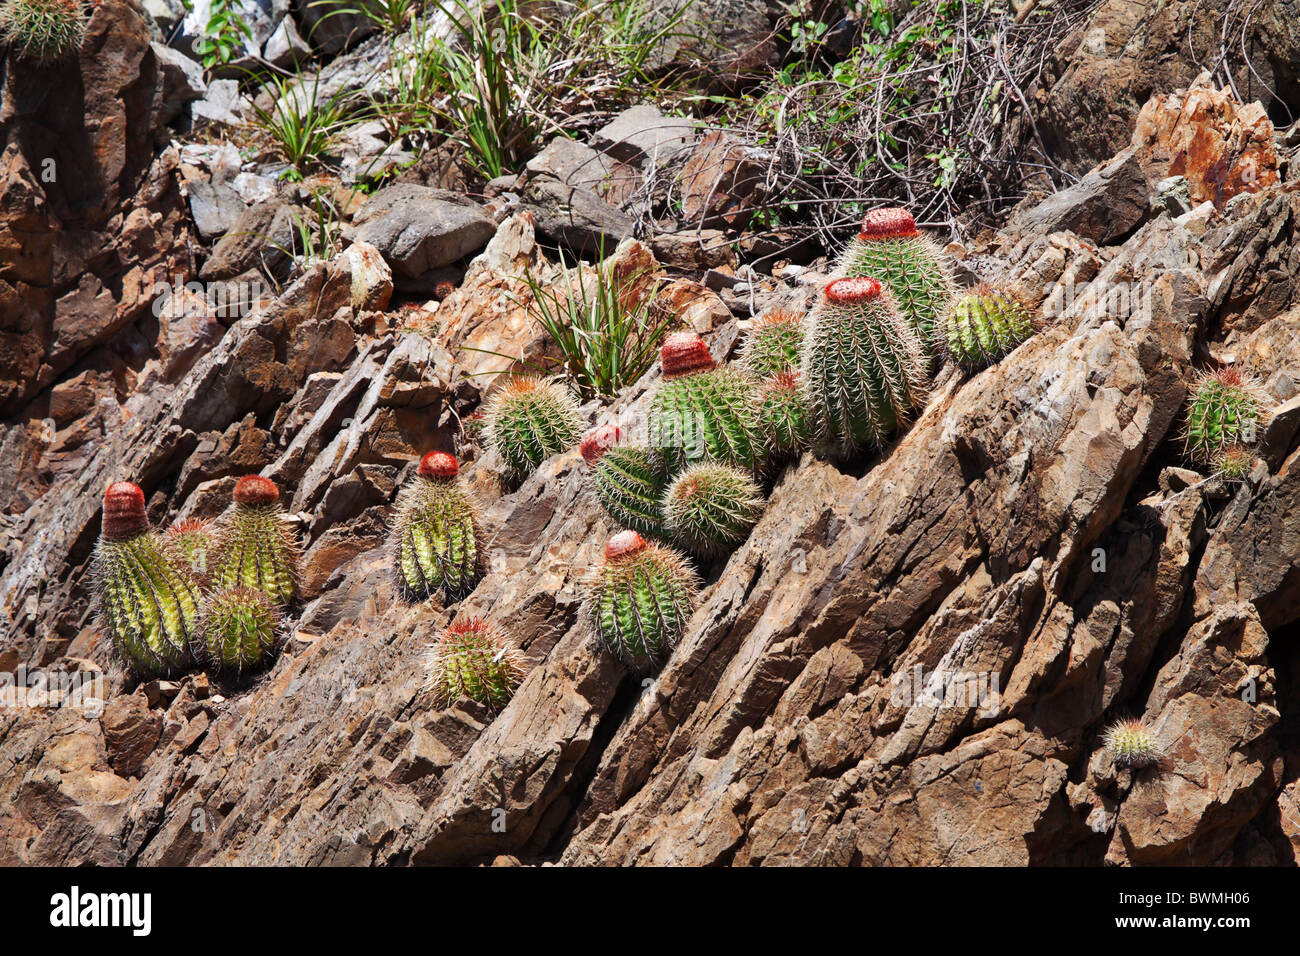 Les Turcs, Cactus, Melocactus intortus croissant sur une colline rocheuse dans les Caraïbes Banque D'Images